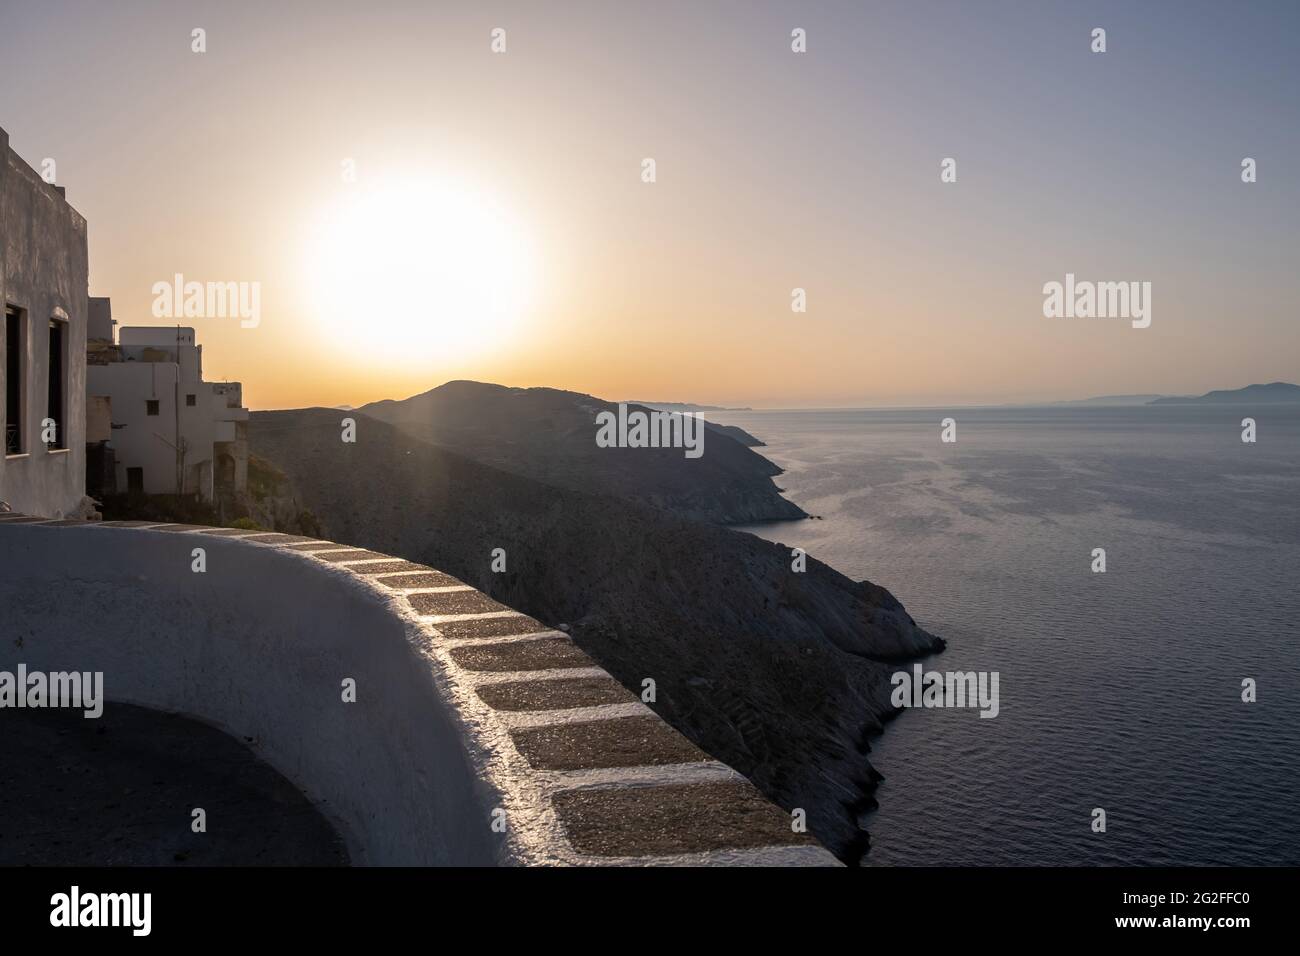 L'île de Folegandros au coucher du soleil. Cyclades, Grèce. Vue à couper le souffle sur la mer Égée depuis les hautes falaises du village de chora, le soleil brille sur un ciel de couleur orange Banque D'Images